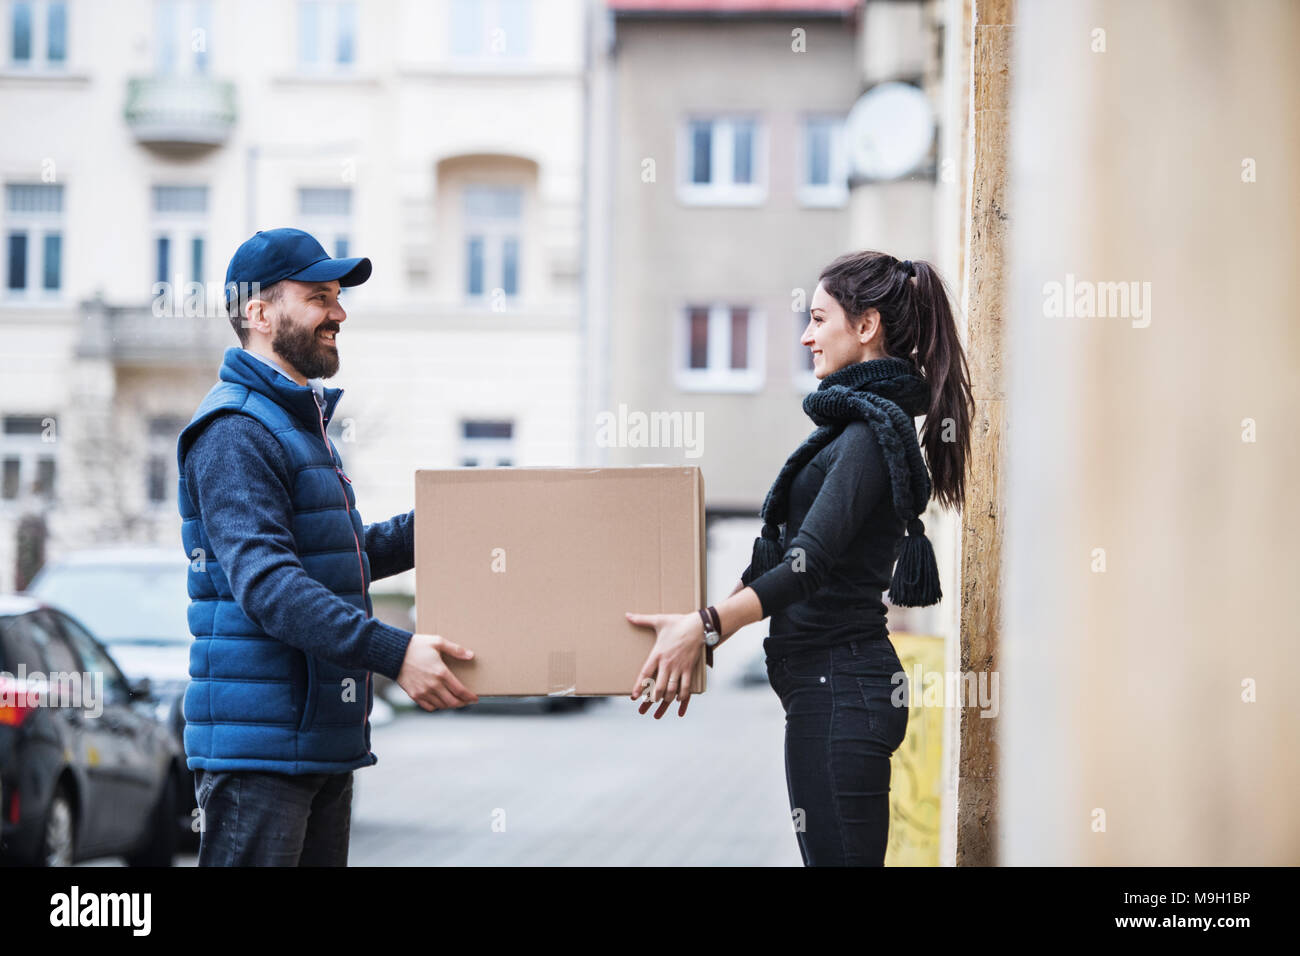 Junge Frau Paket empfangen von Lieferung Mann an der Tür - Kurier Service  Konzept Stockfotografie - Alamy